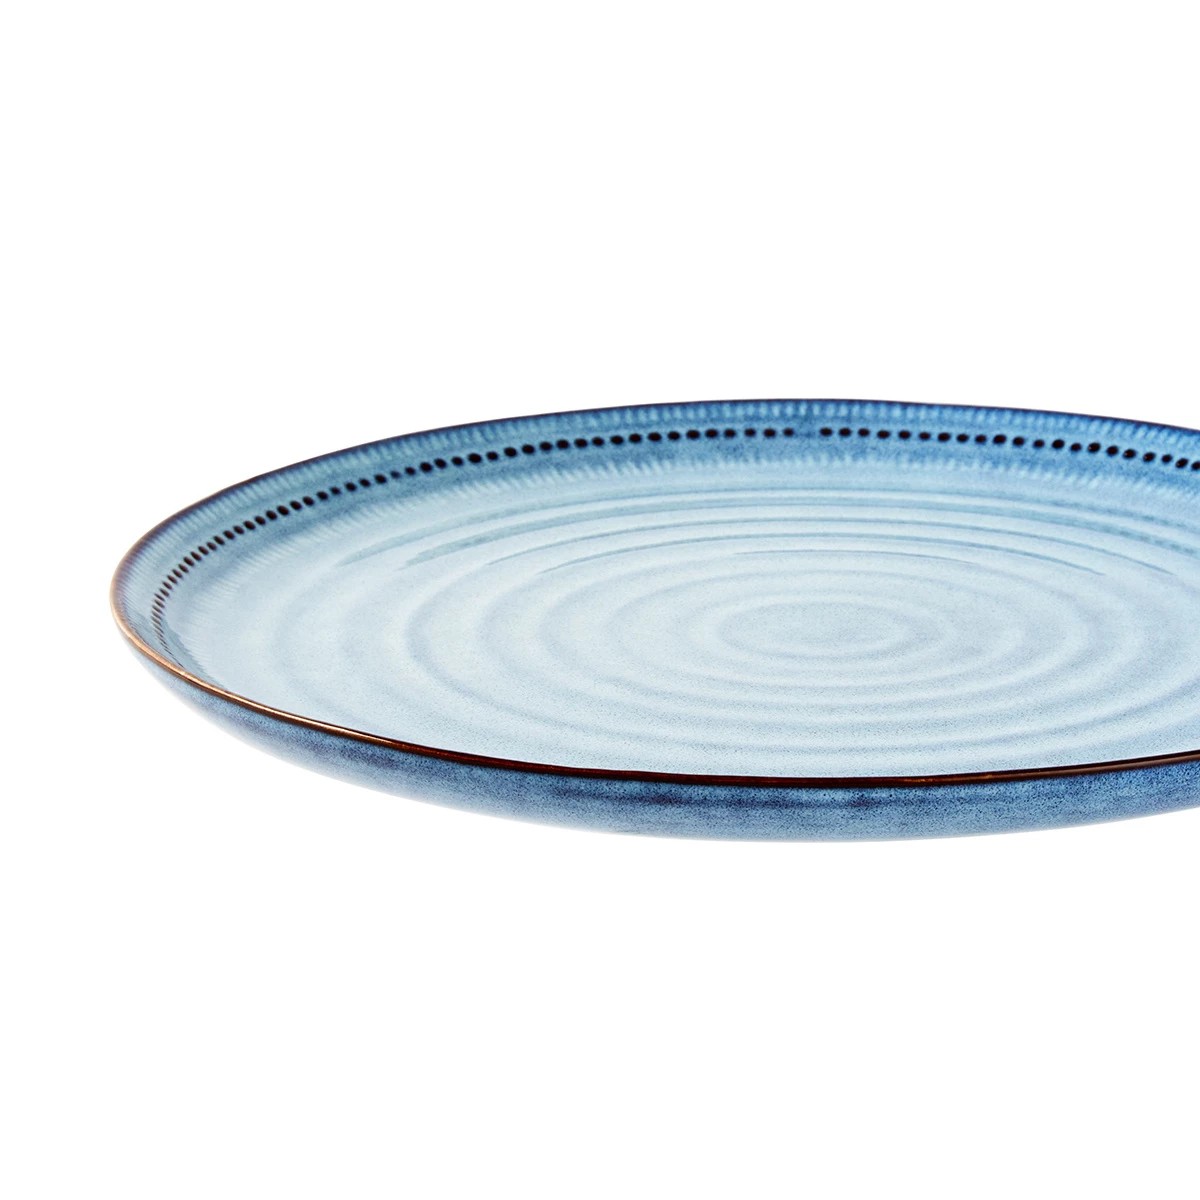 Maison Dinner Plate - Anko | Target Australia